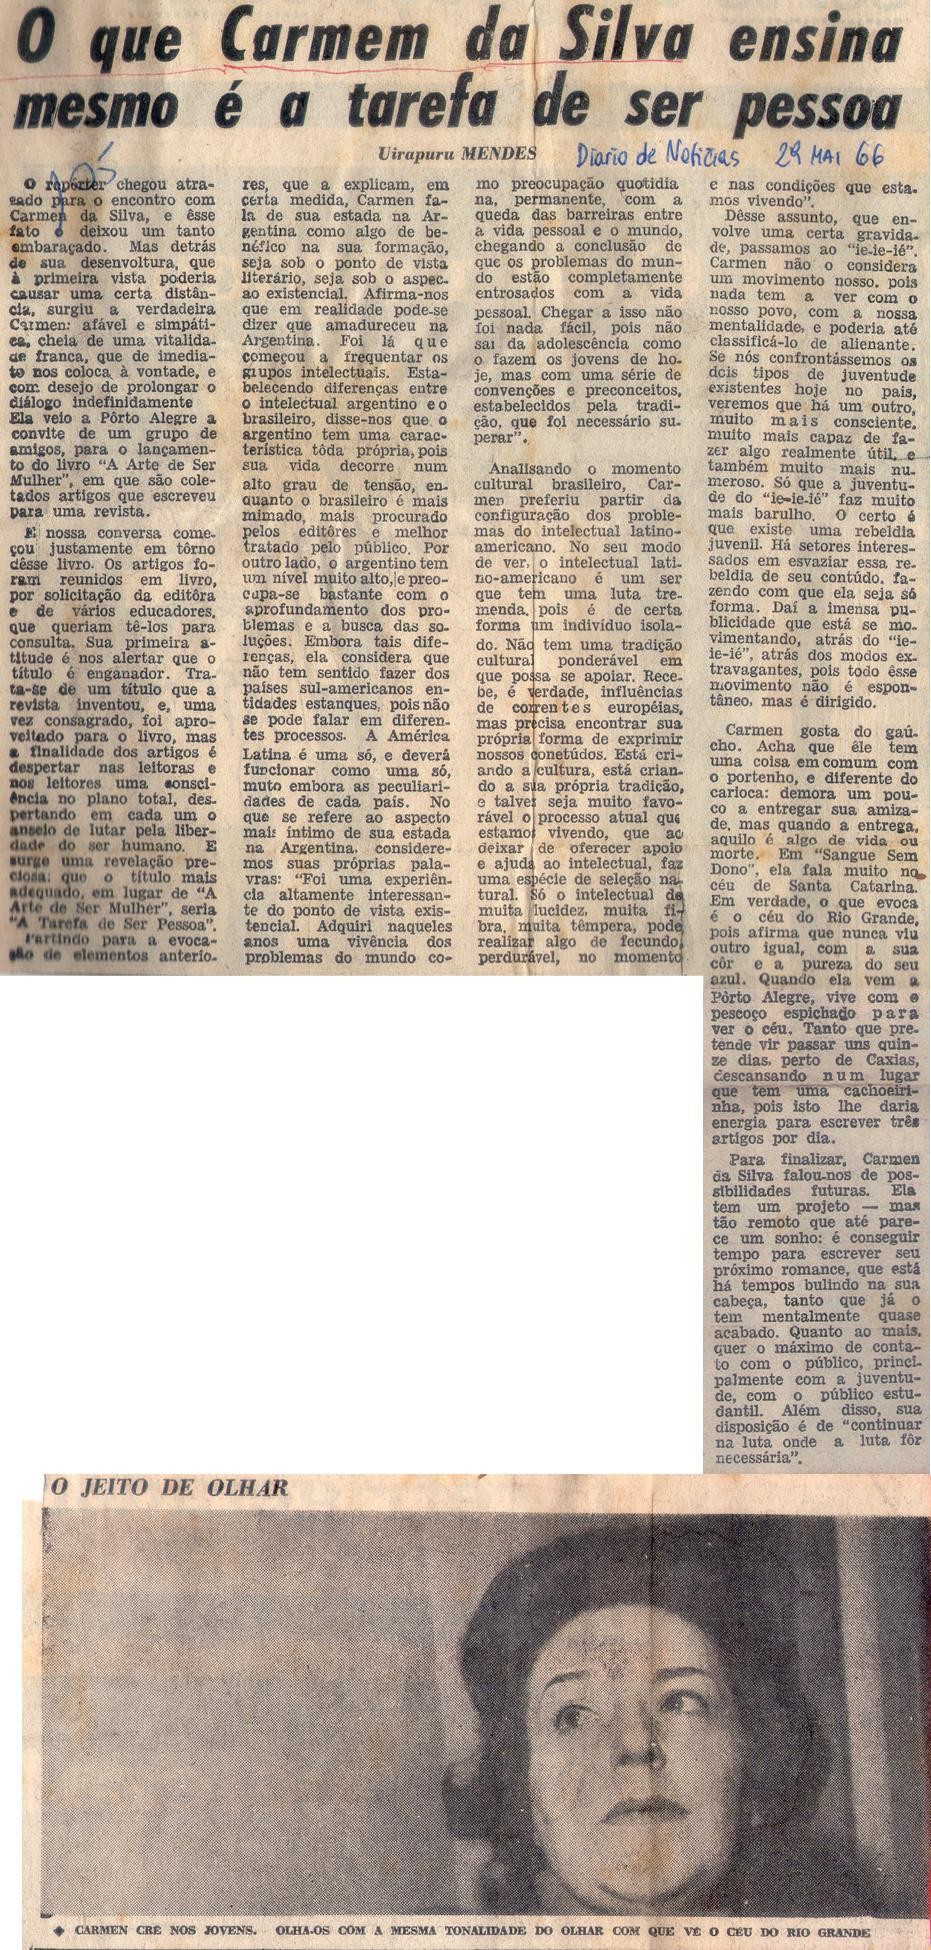 29 de Maio de 1966 - Diário de Notícias. O que Carmem da Silva ensina mesmo é a tarefa de ser pessoa.